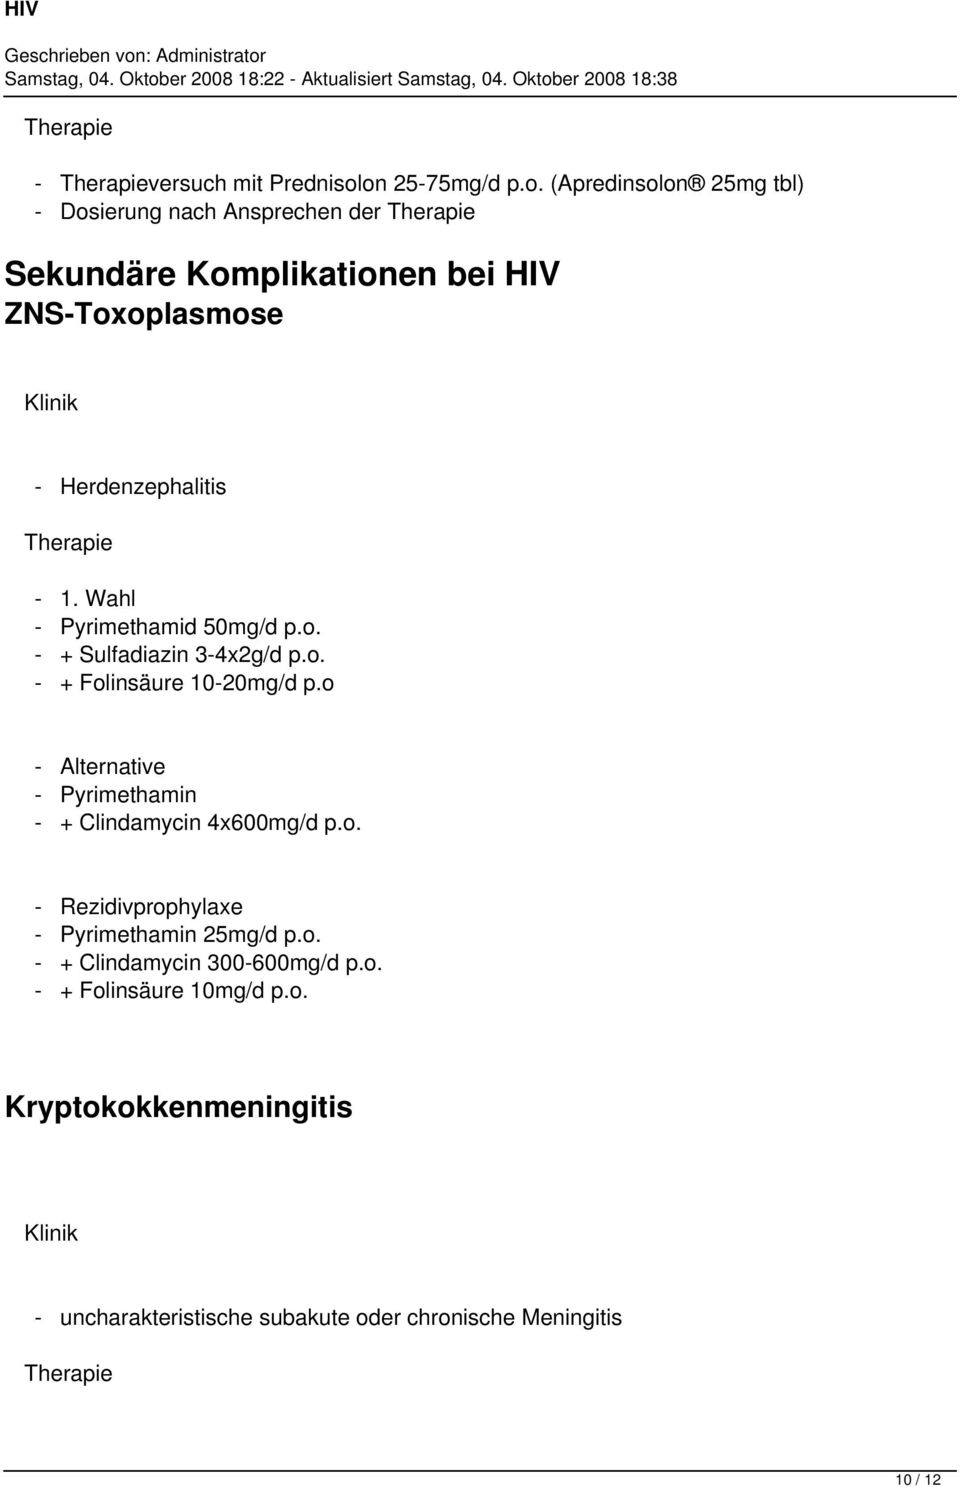 Herdenzephalitis - 1. Wahl - Pyrimethamid 50mg/d p.o. - + Sulfadiazin 3-4x2g/d p.o. - + Folinsäure 10-20mg/d p.